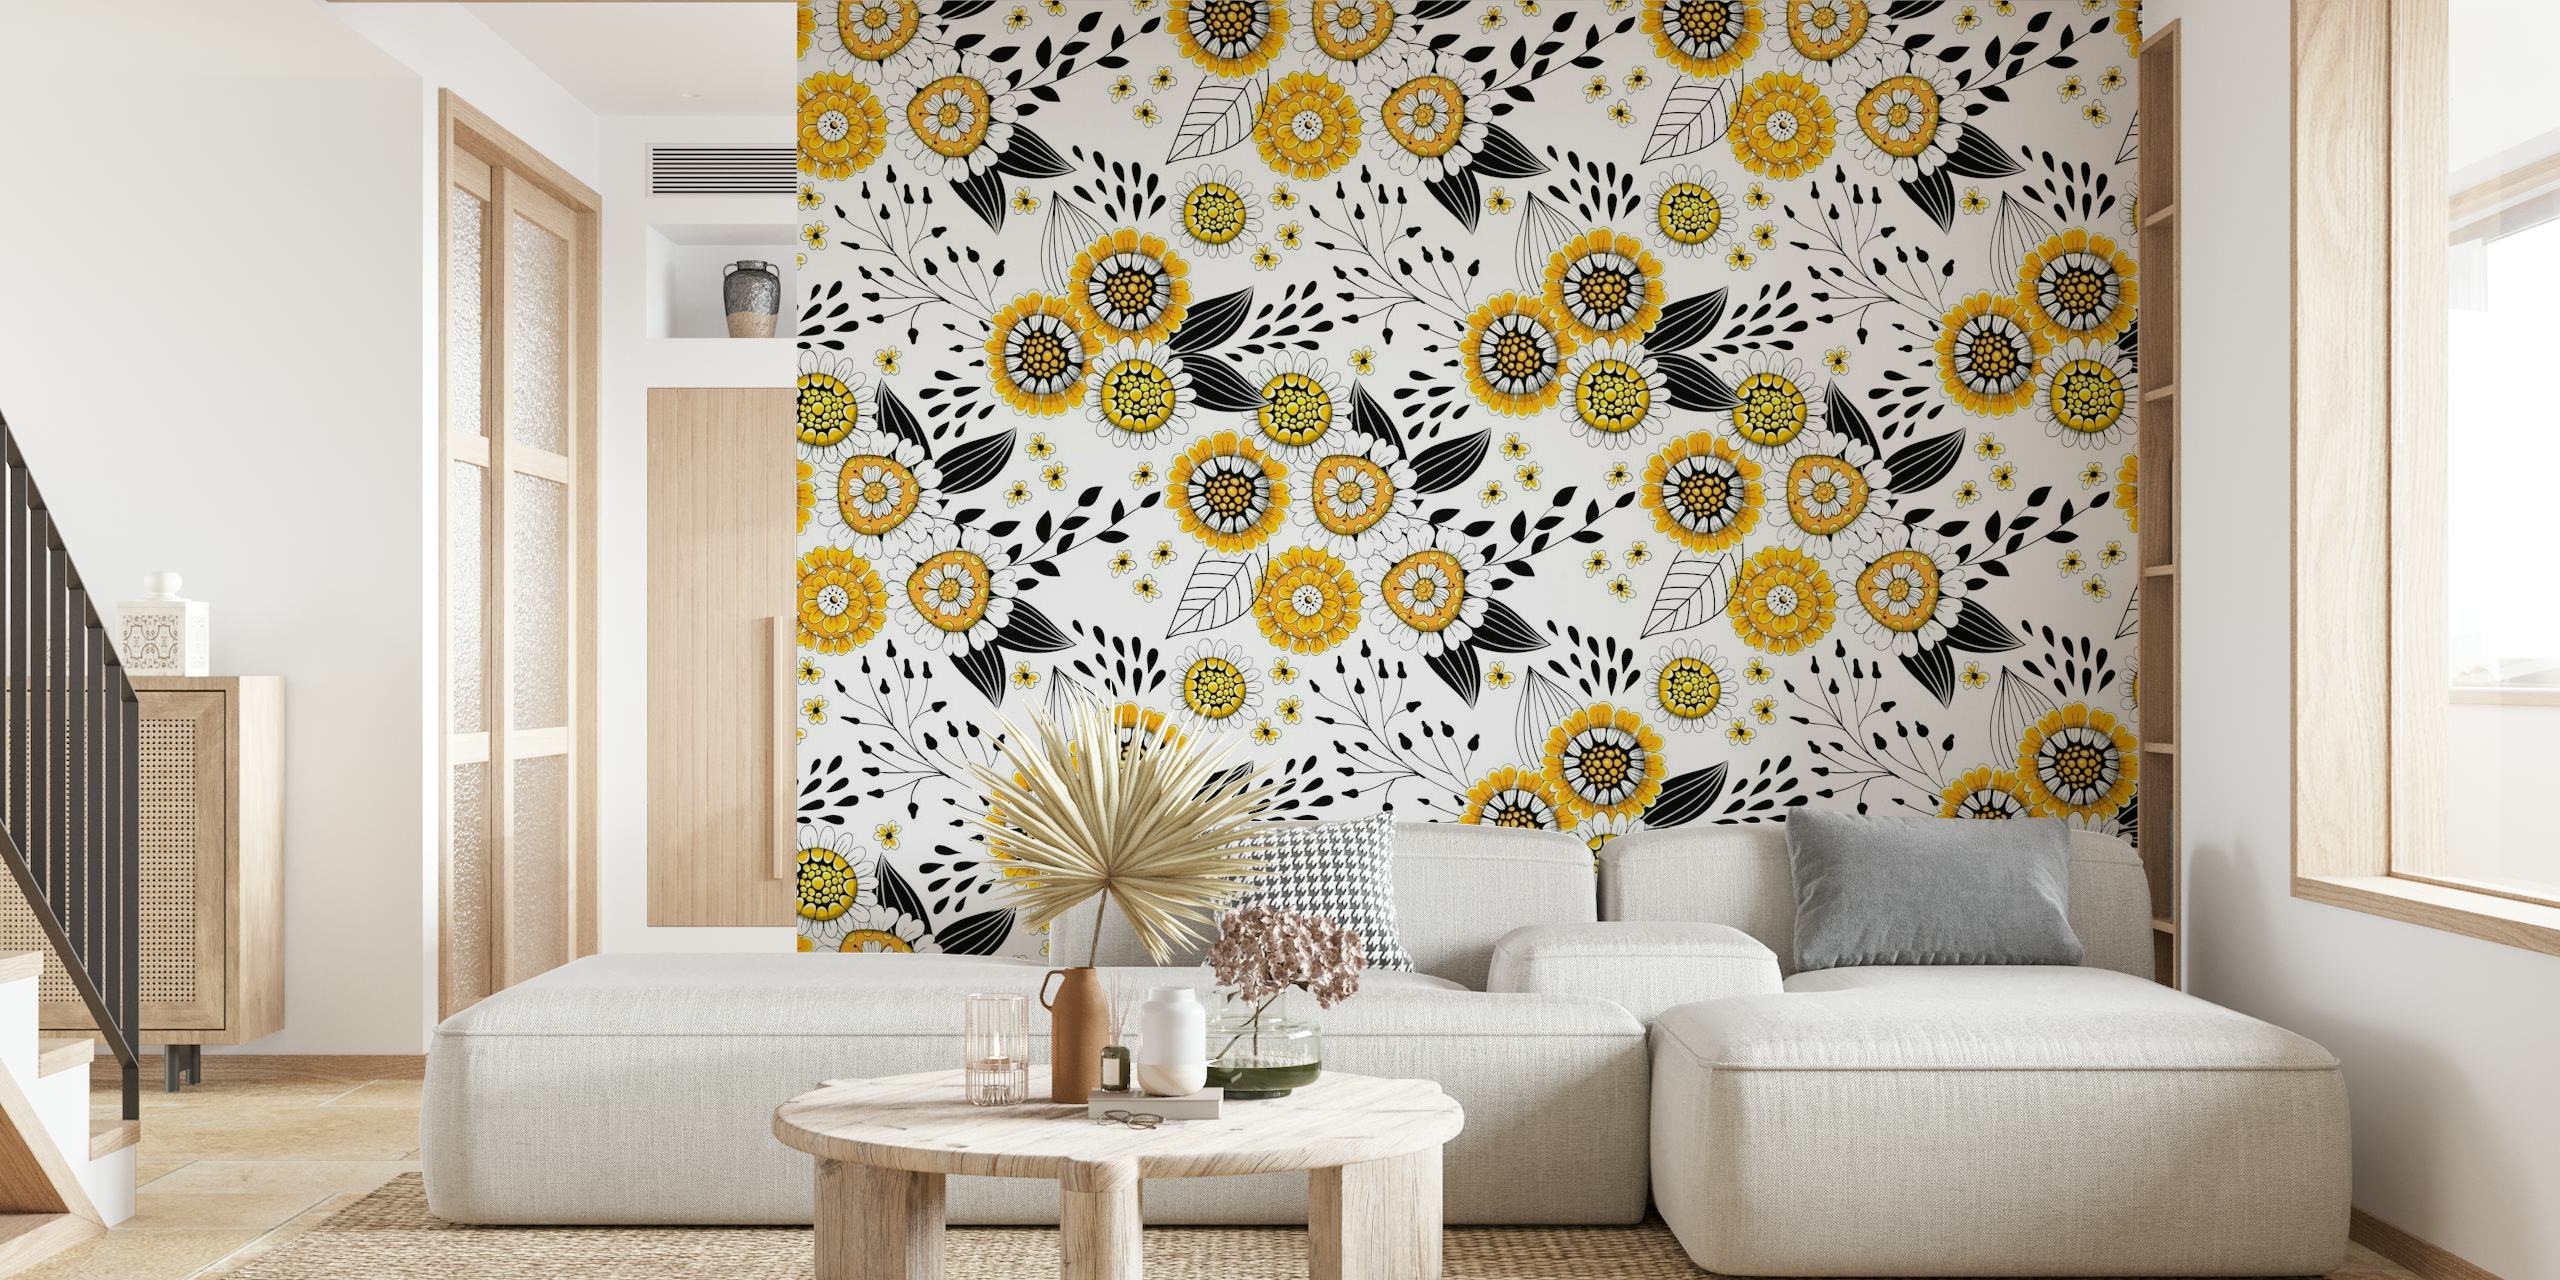 Fotomural vinílico de parede Doodle Flowers 7 com flores amarelas desenhadas à mão e detalhes pretos.